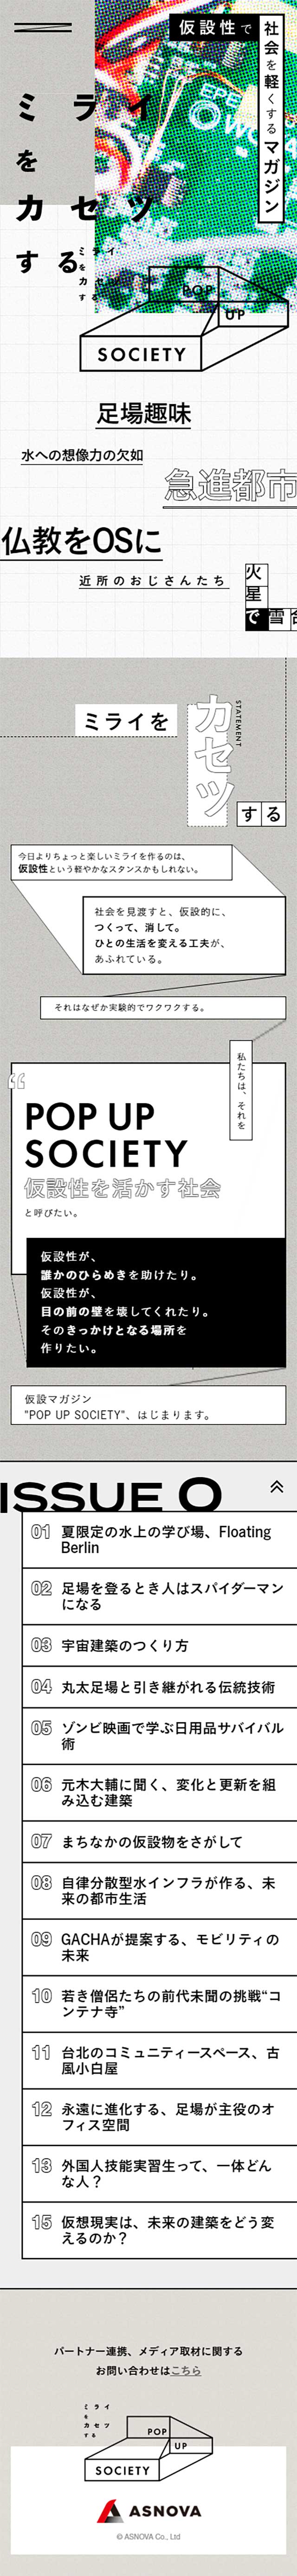 仮設マガジン『POP UP SOCIETY』_sp_1